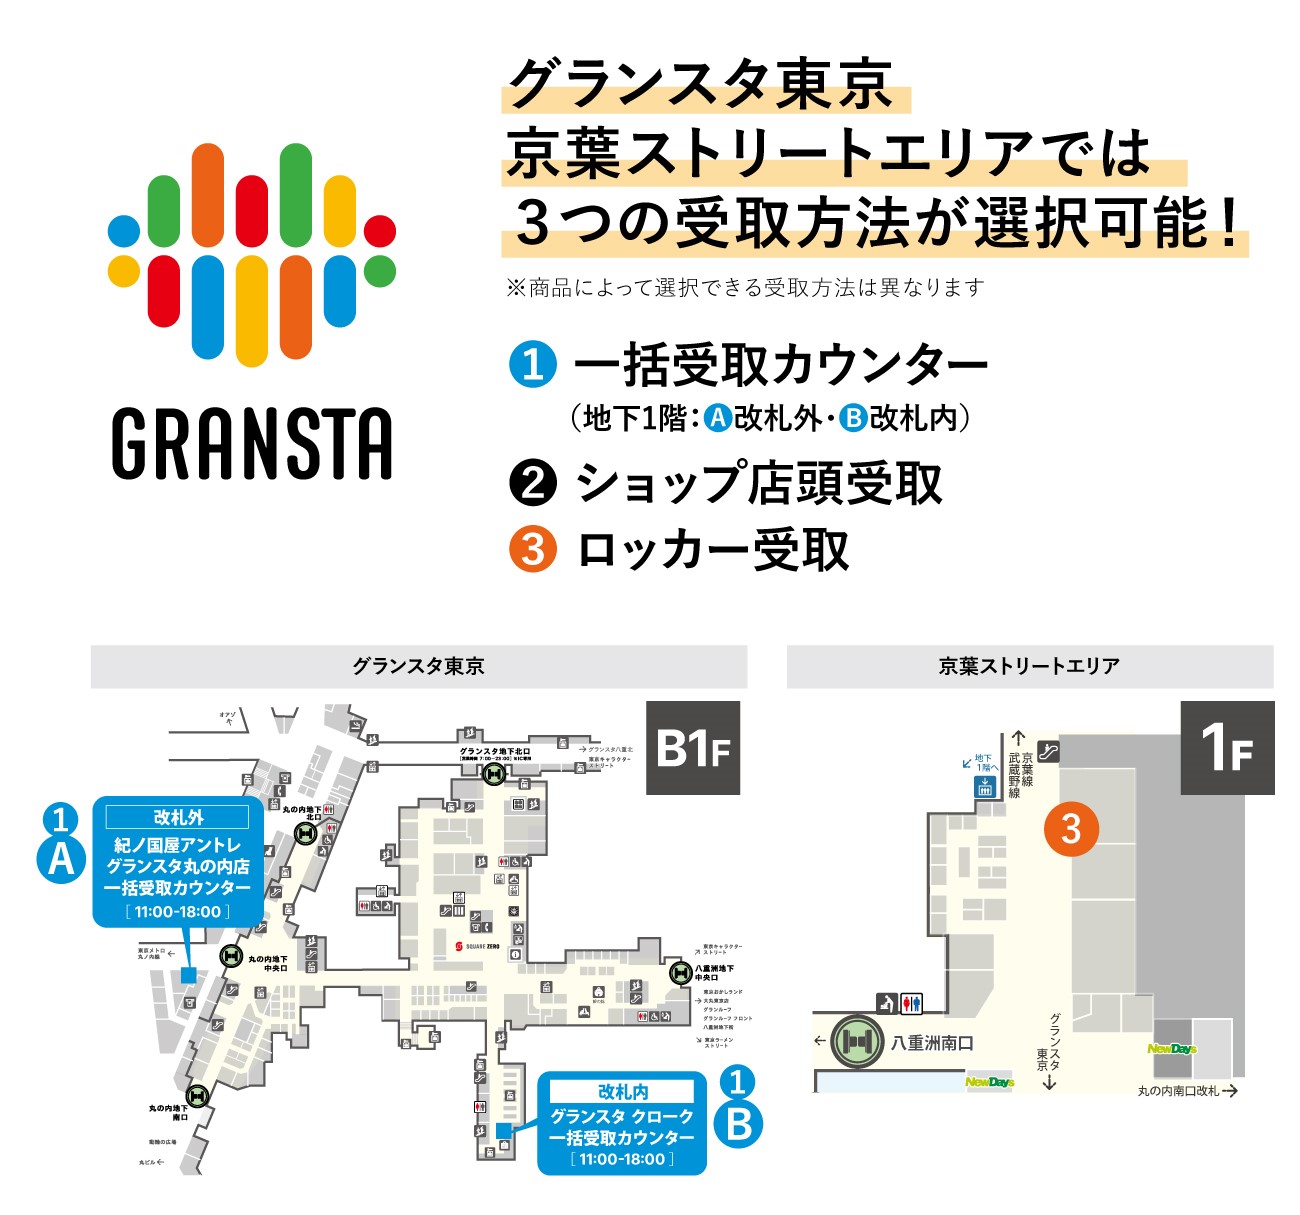 グランスタ東京 京葉ストリートエリアは3つの受取方法が選択可能！ 1.一括受取カウンター（地下1階：改札外・改札内） 2.ショップ店頭受取 3.ロッカー受取